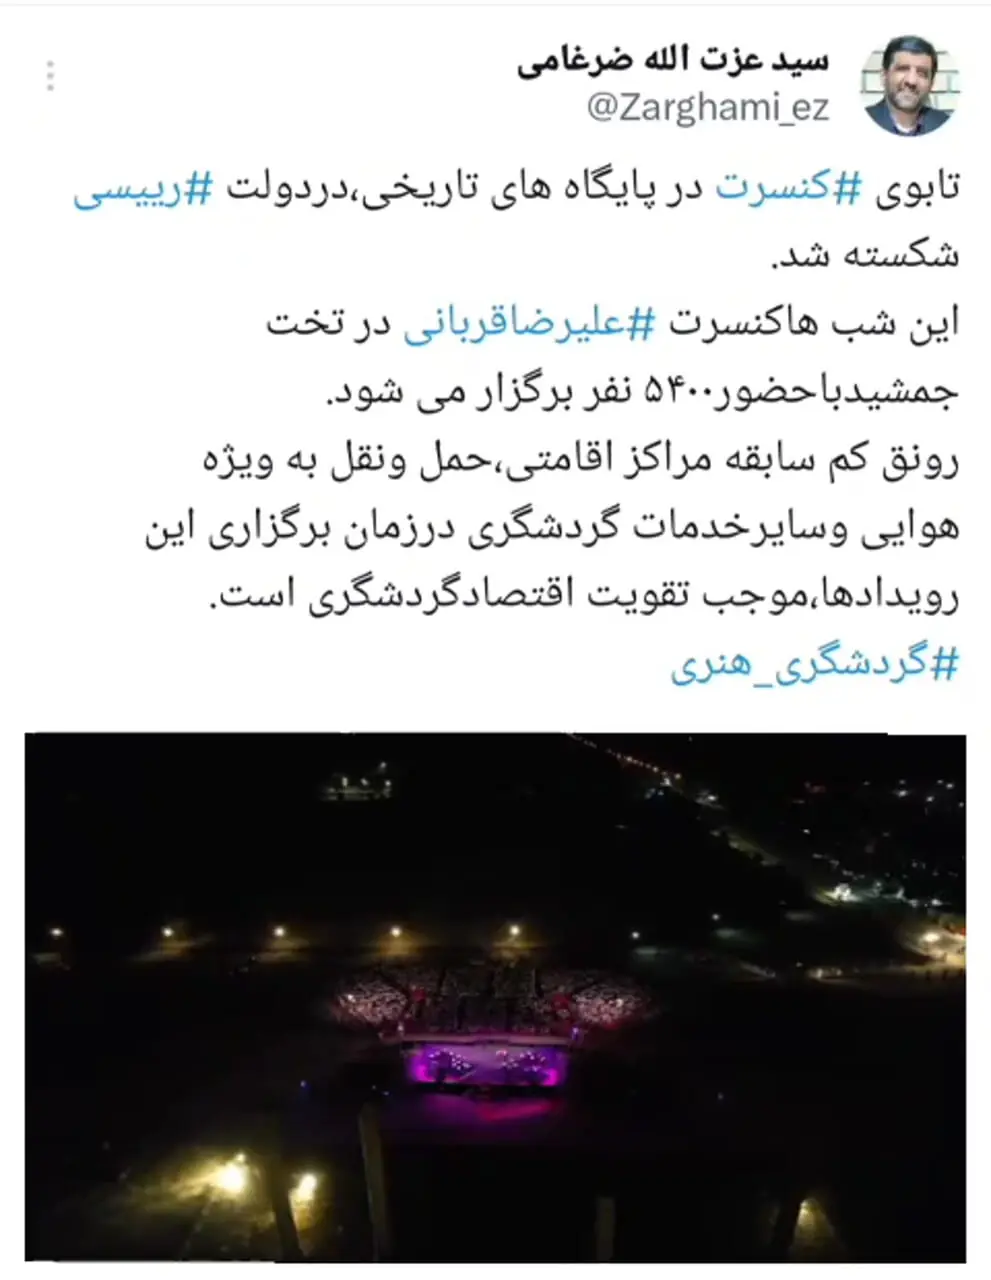 ضرغامی: تابوی کنسرت در پایگاه های تاریخی، در دولت رییسی شکسته شد